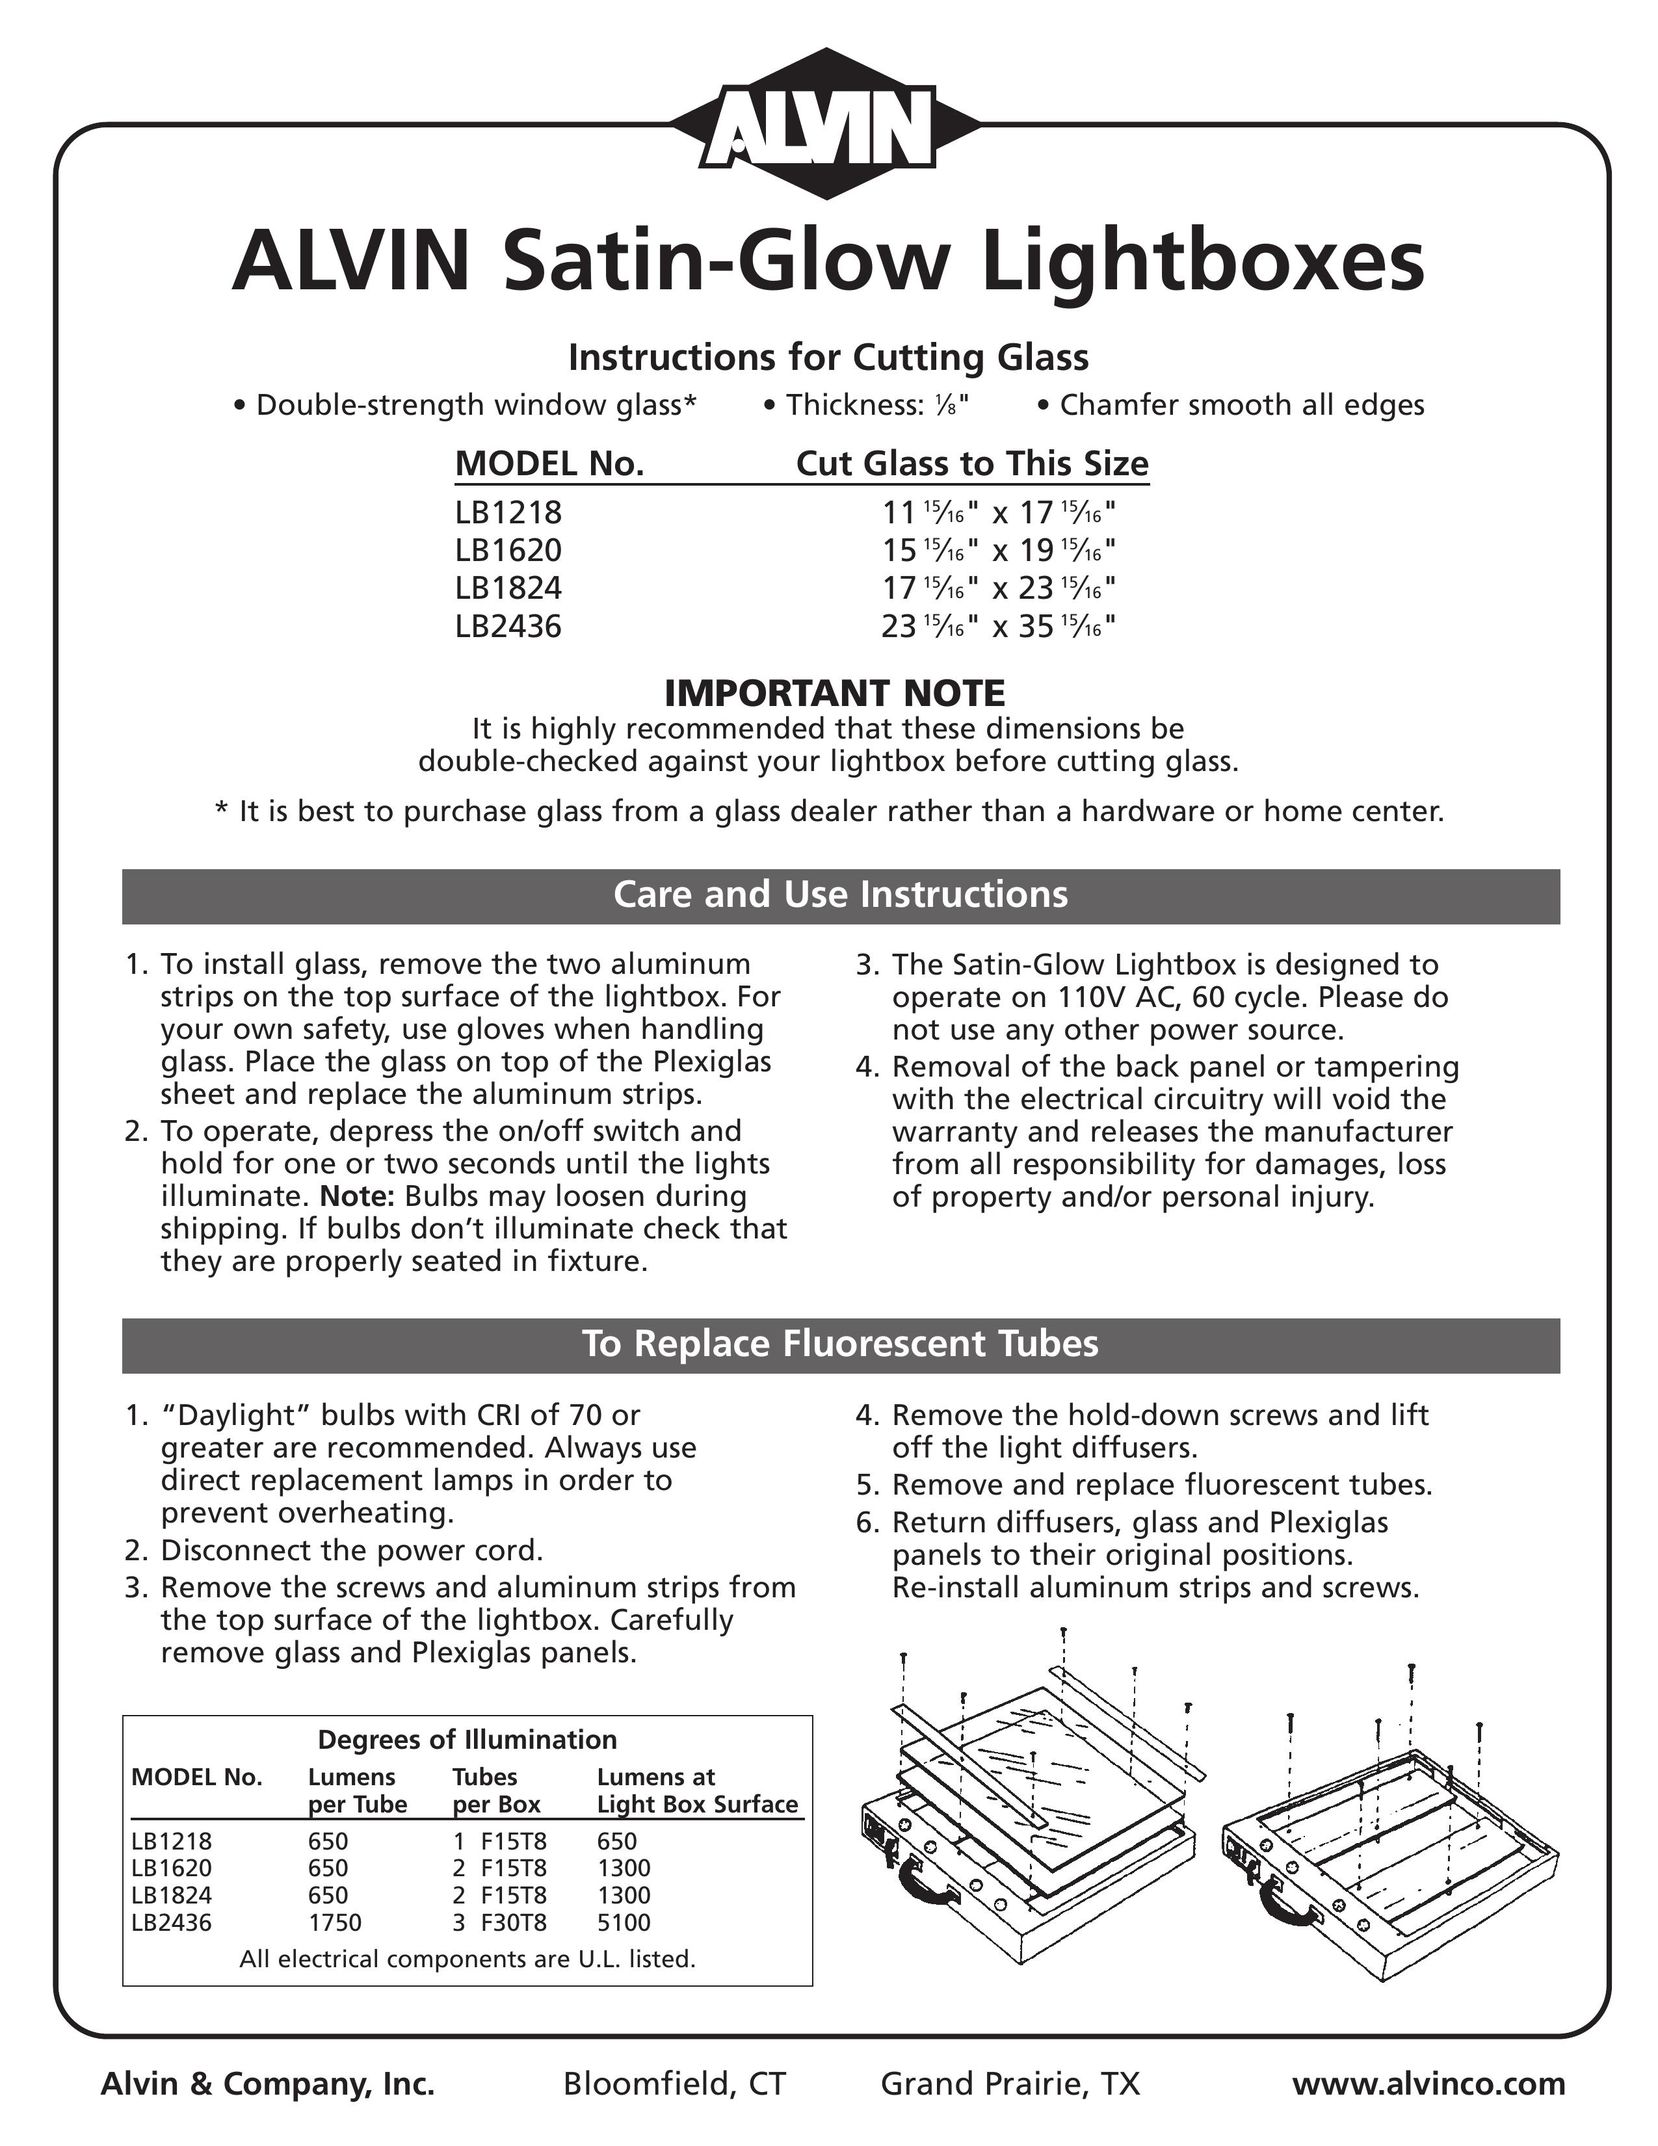 Alvin LB1824 Indoor Furnishings User Manual